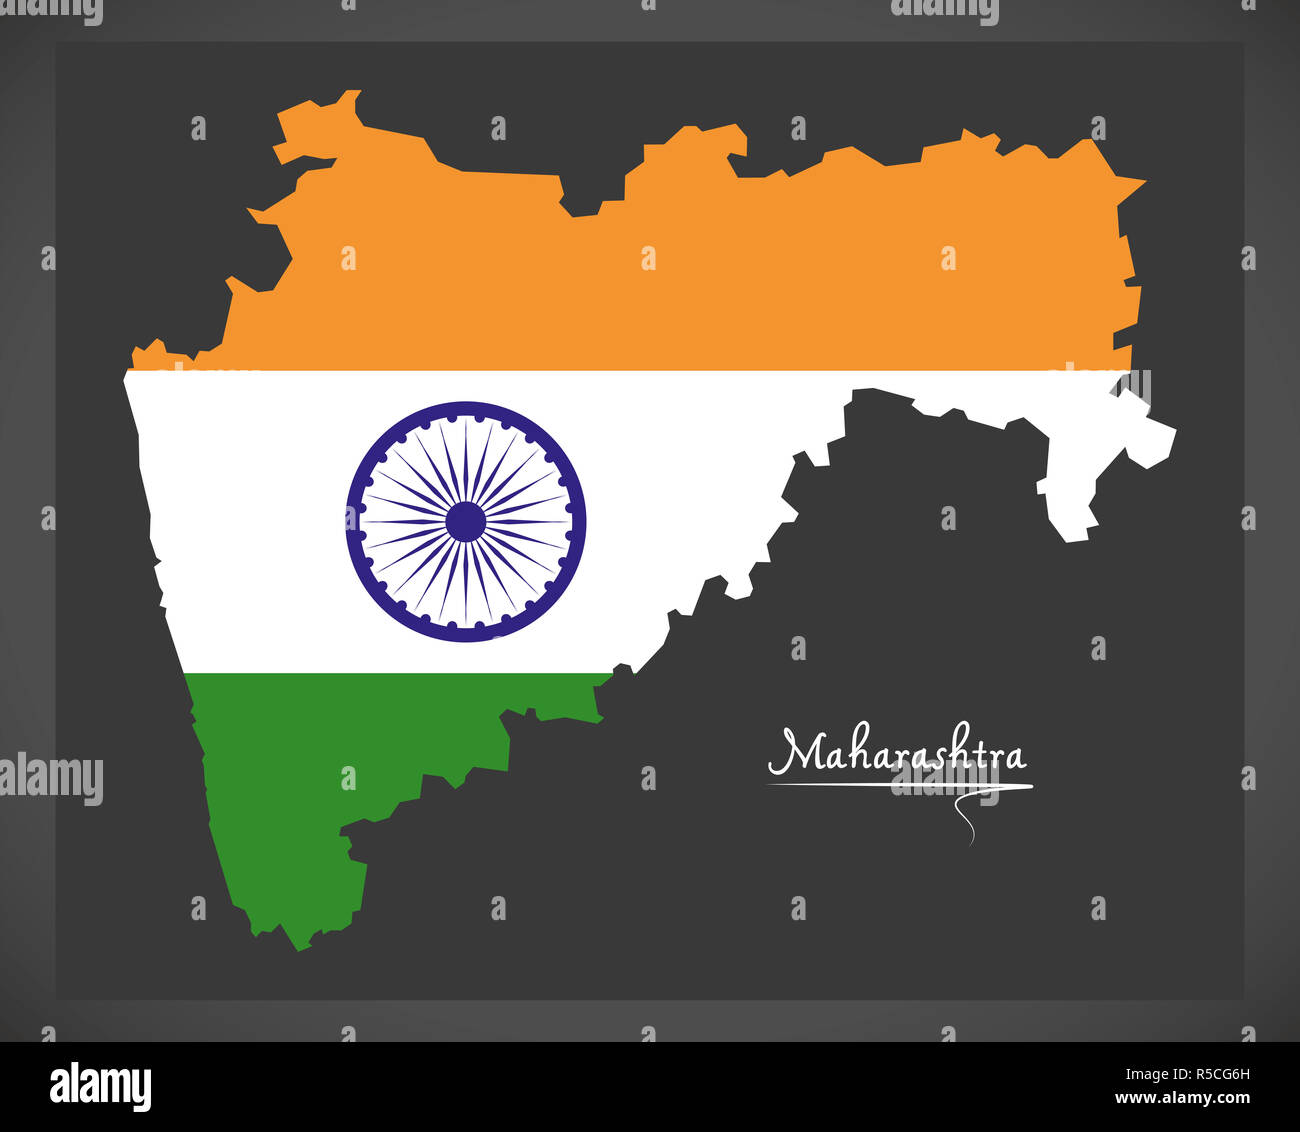 Carte de Maharashtra avec drapeau national indien illustration Banque D'Images